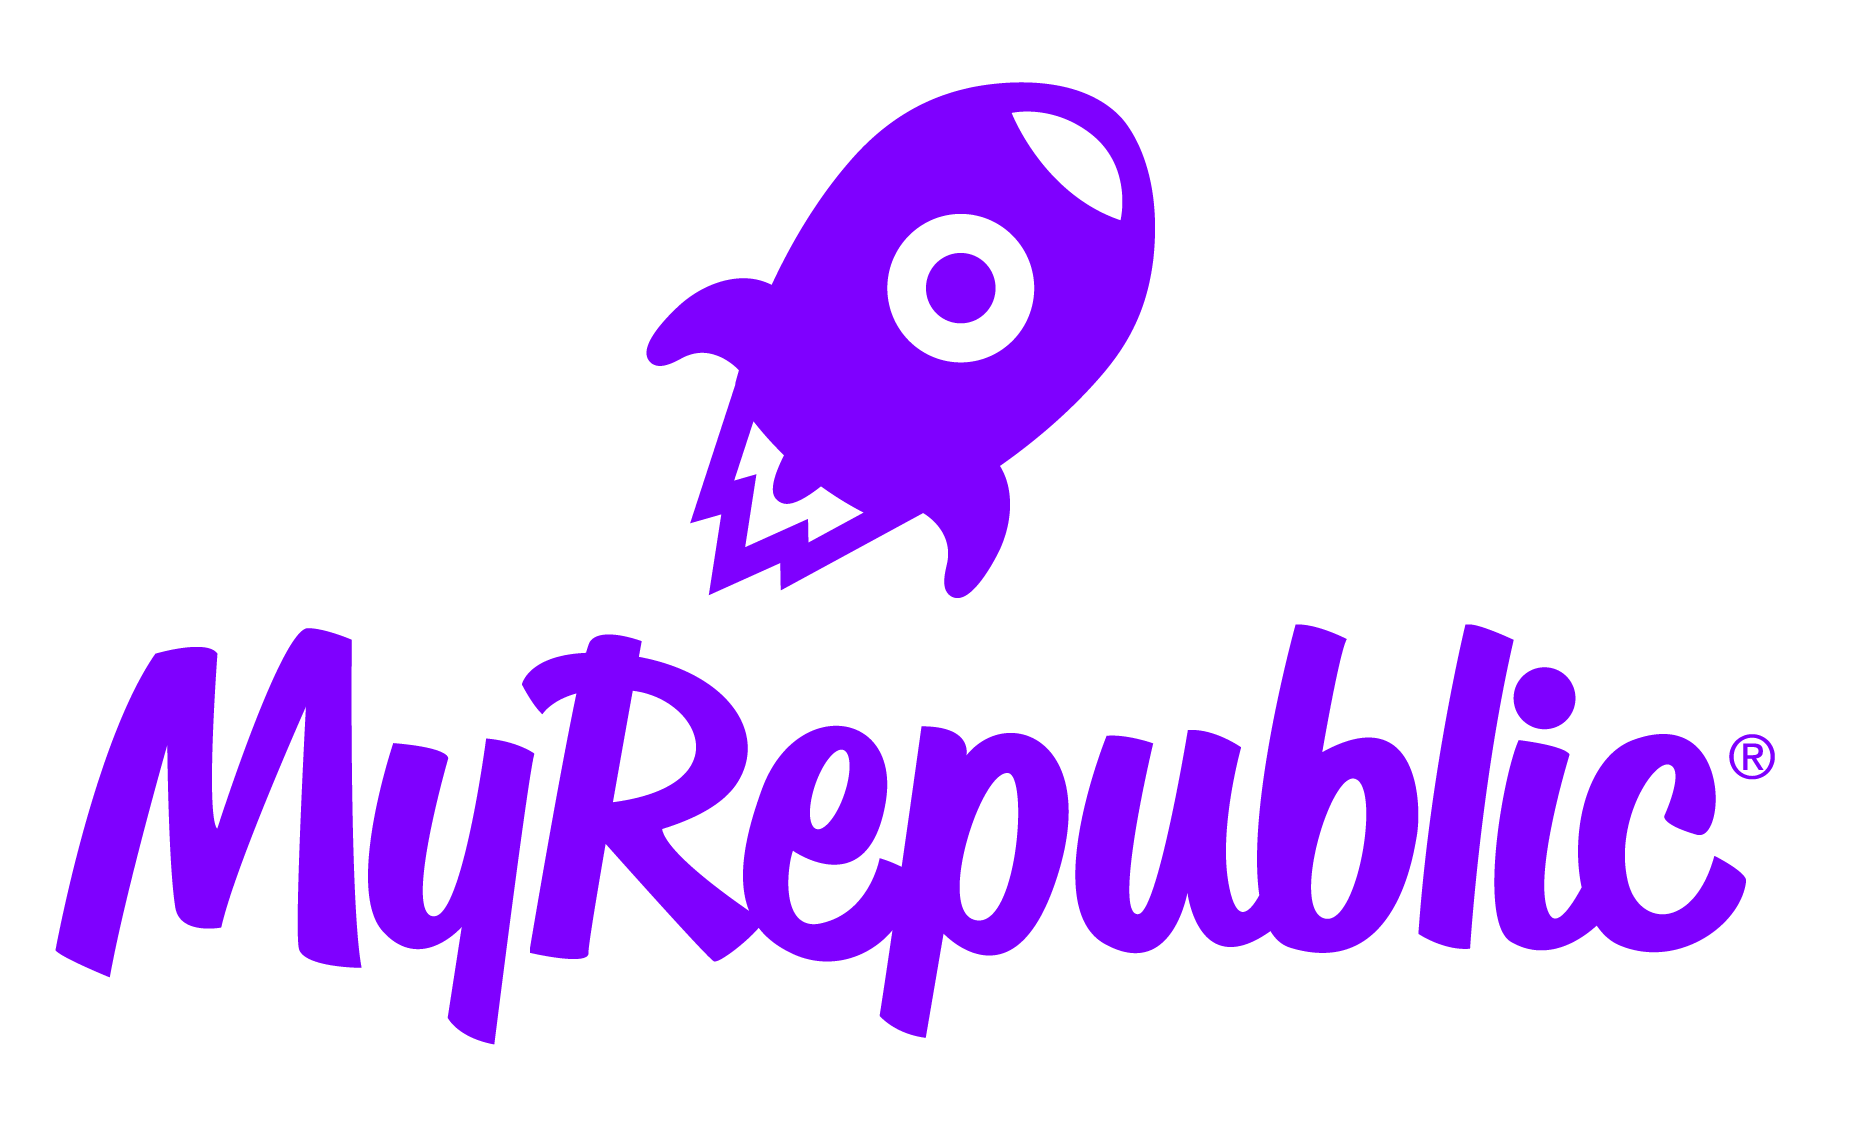 MyRepublic logo